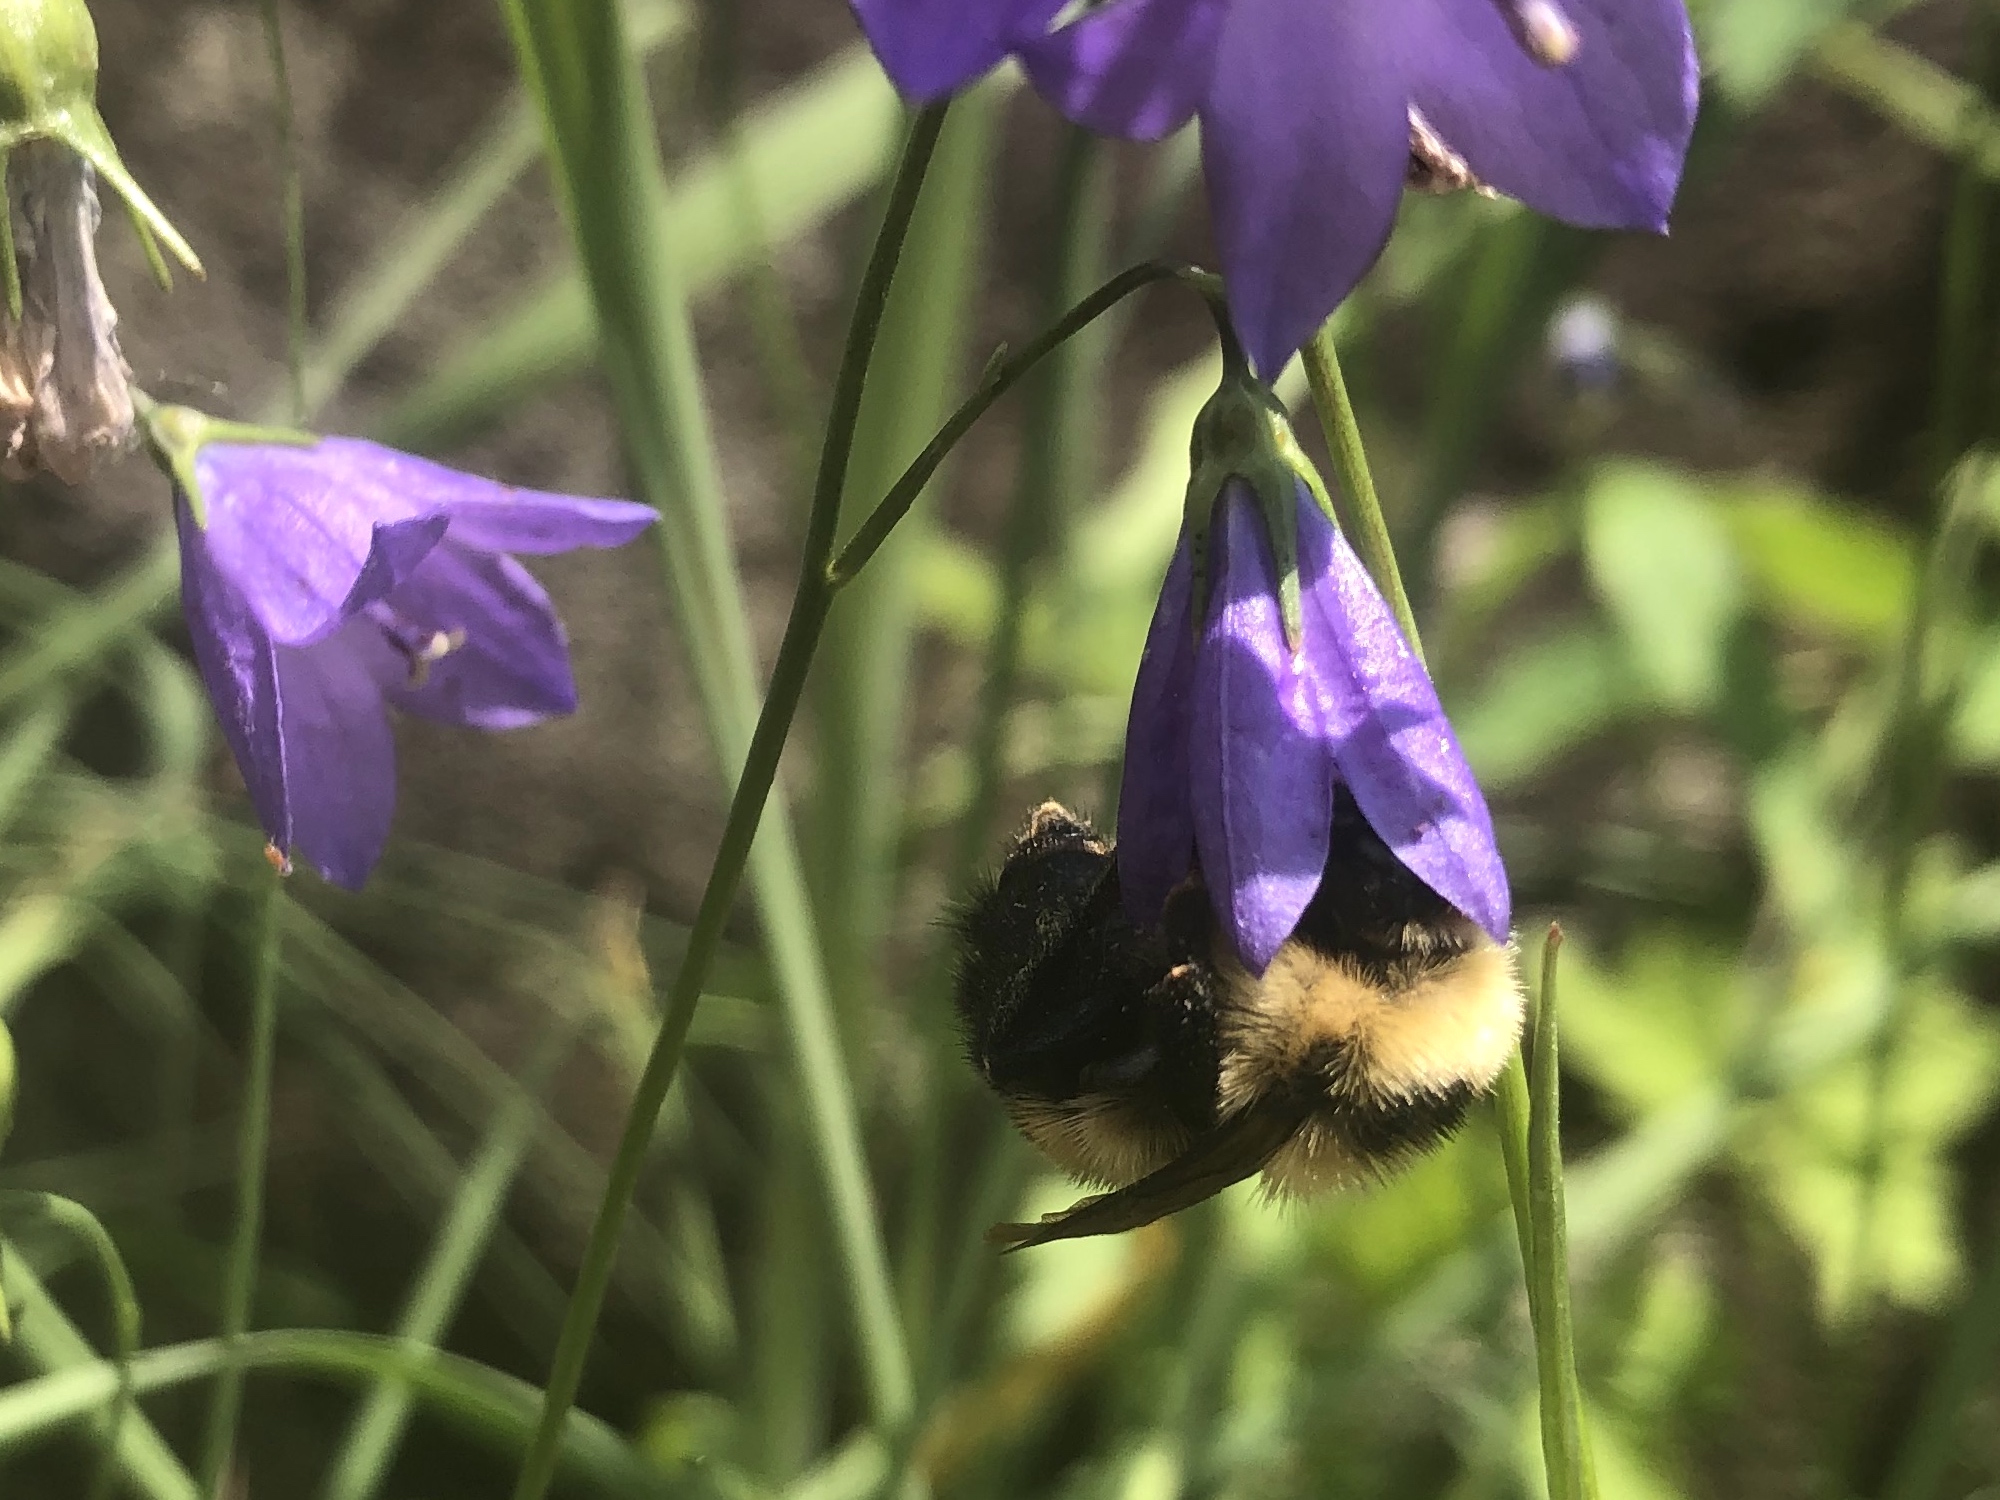 Bumblebee on Harebell on June 15, 2021.